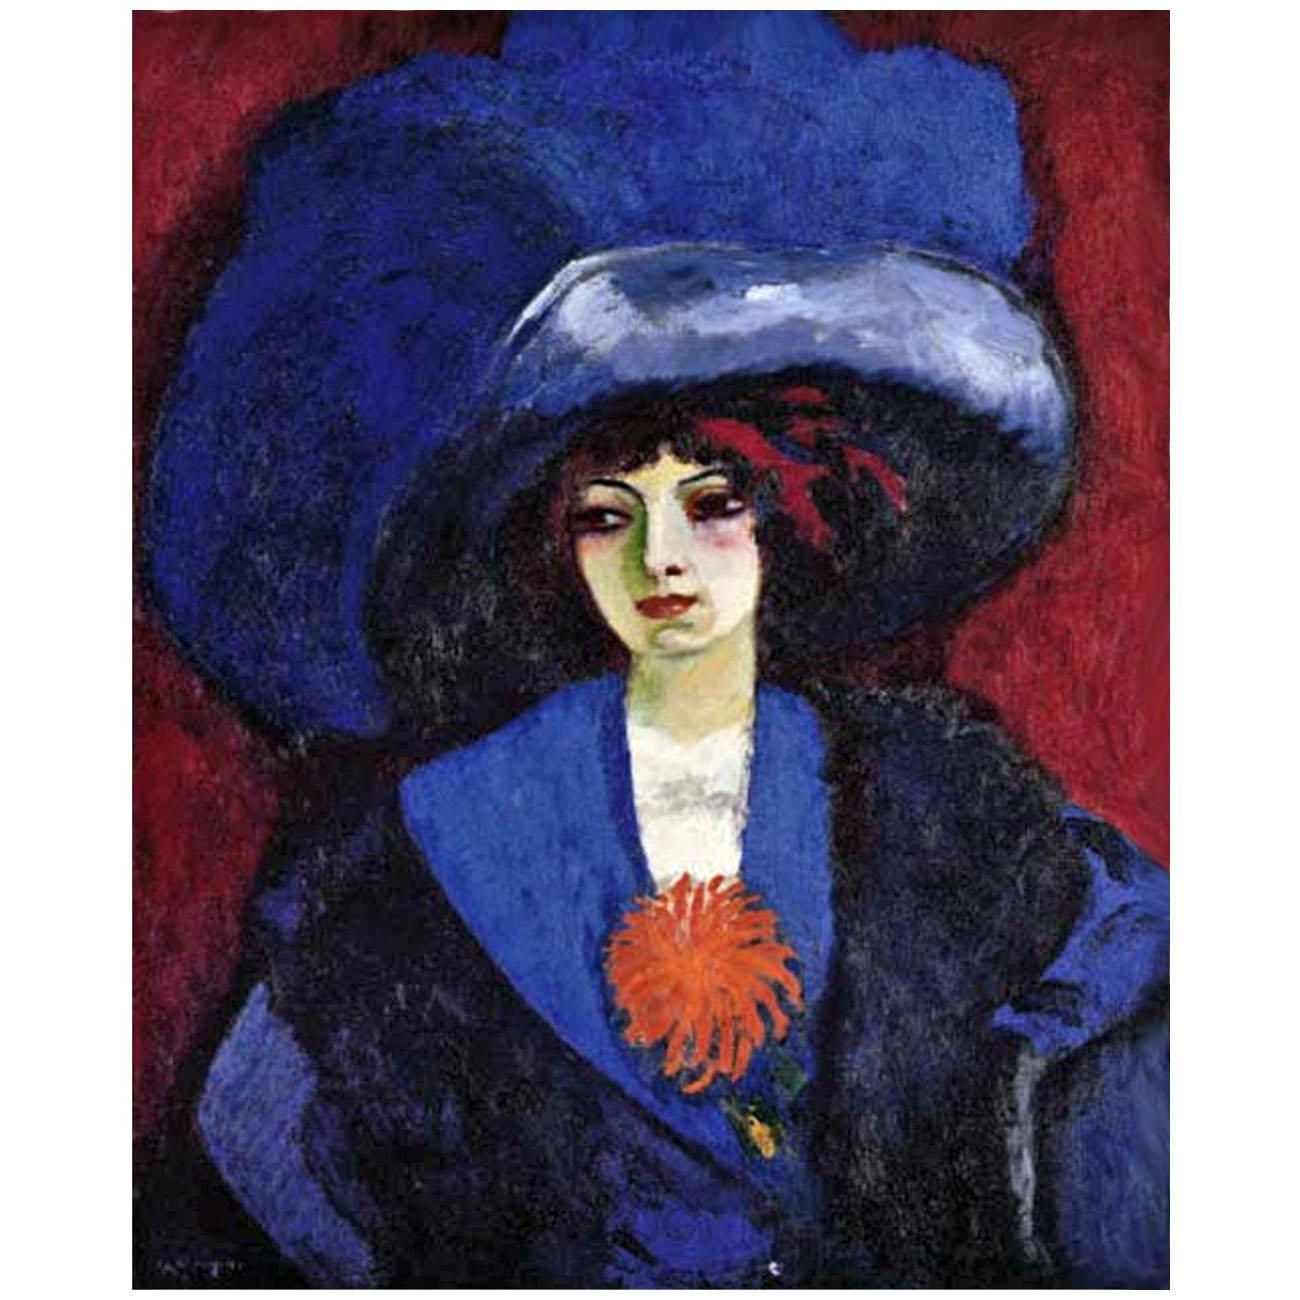 Kees van Dongen. Le chapeau bleu. 1912. Private collection